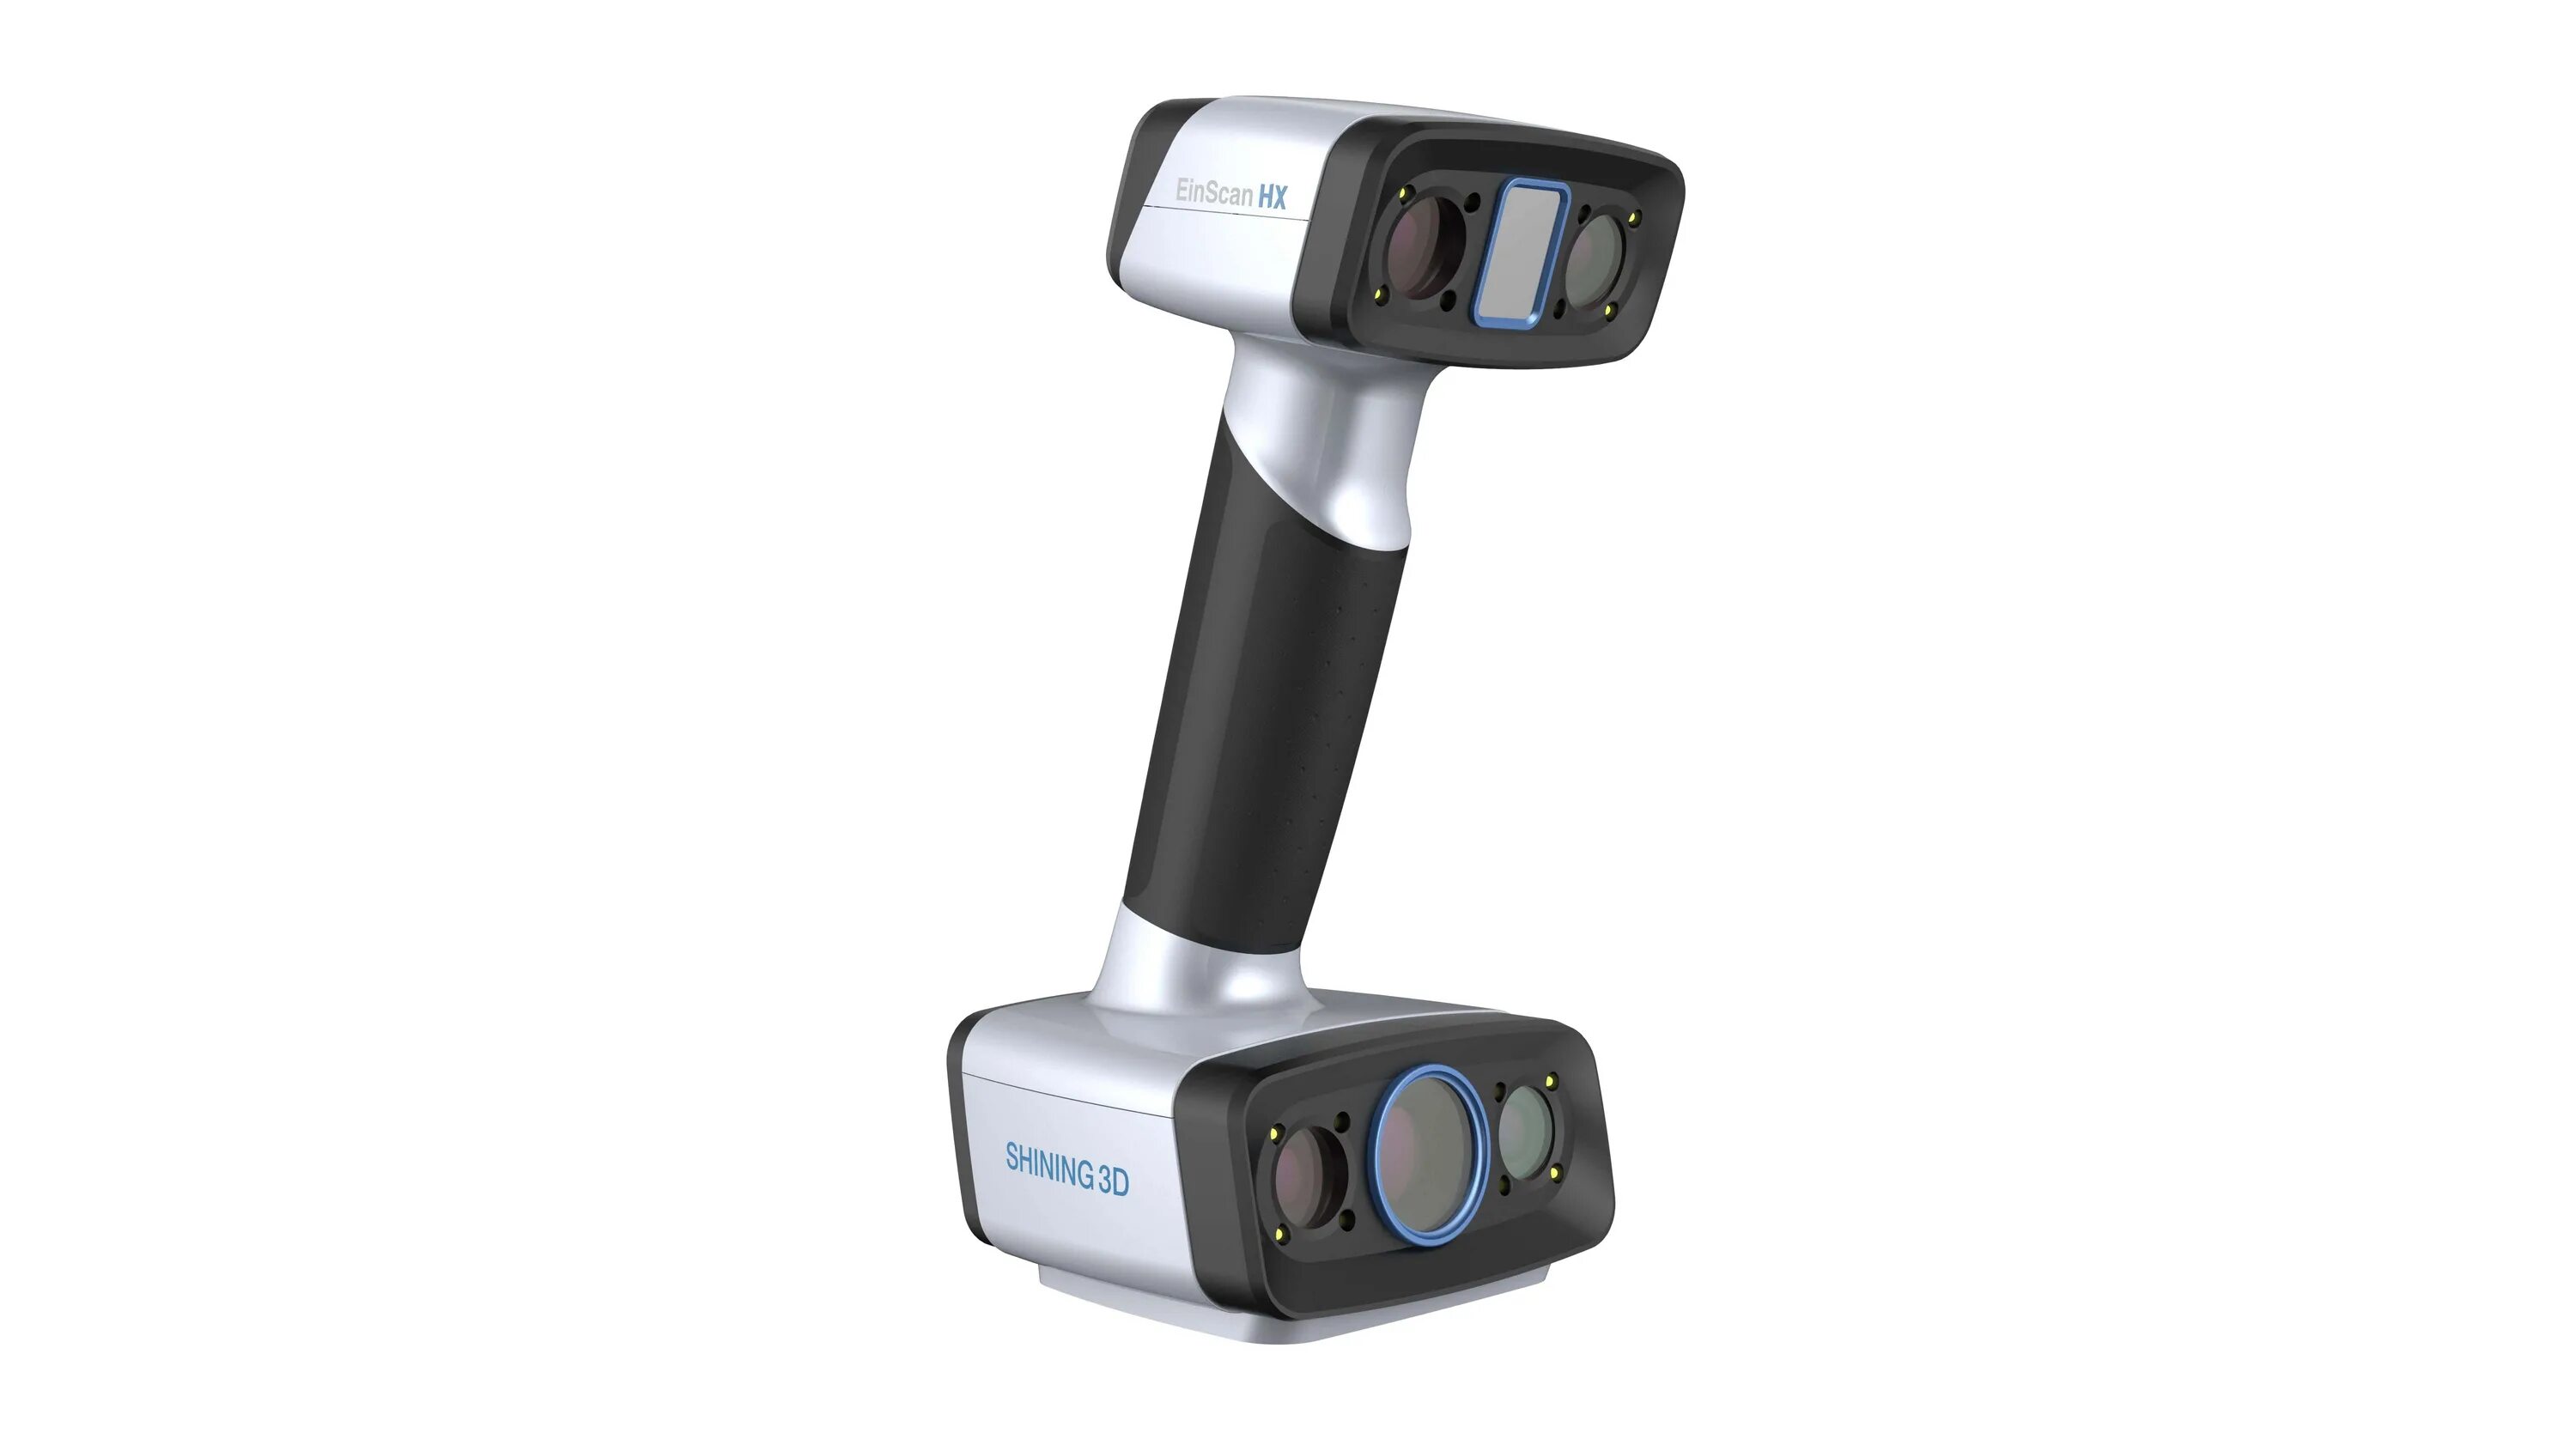 Shining 3d ручной 3d сканер EINSCAN HX. 3d сканер Shining 3d EINSCAN se v2. 3d-сканеры Shining 3d UE Pro. Shining 3d сканер стоматологический. Сканер гибридов